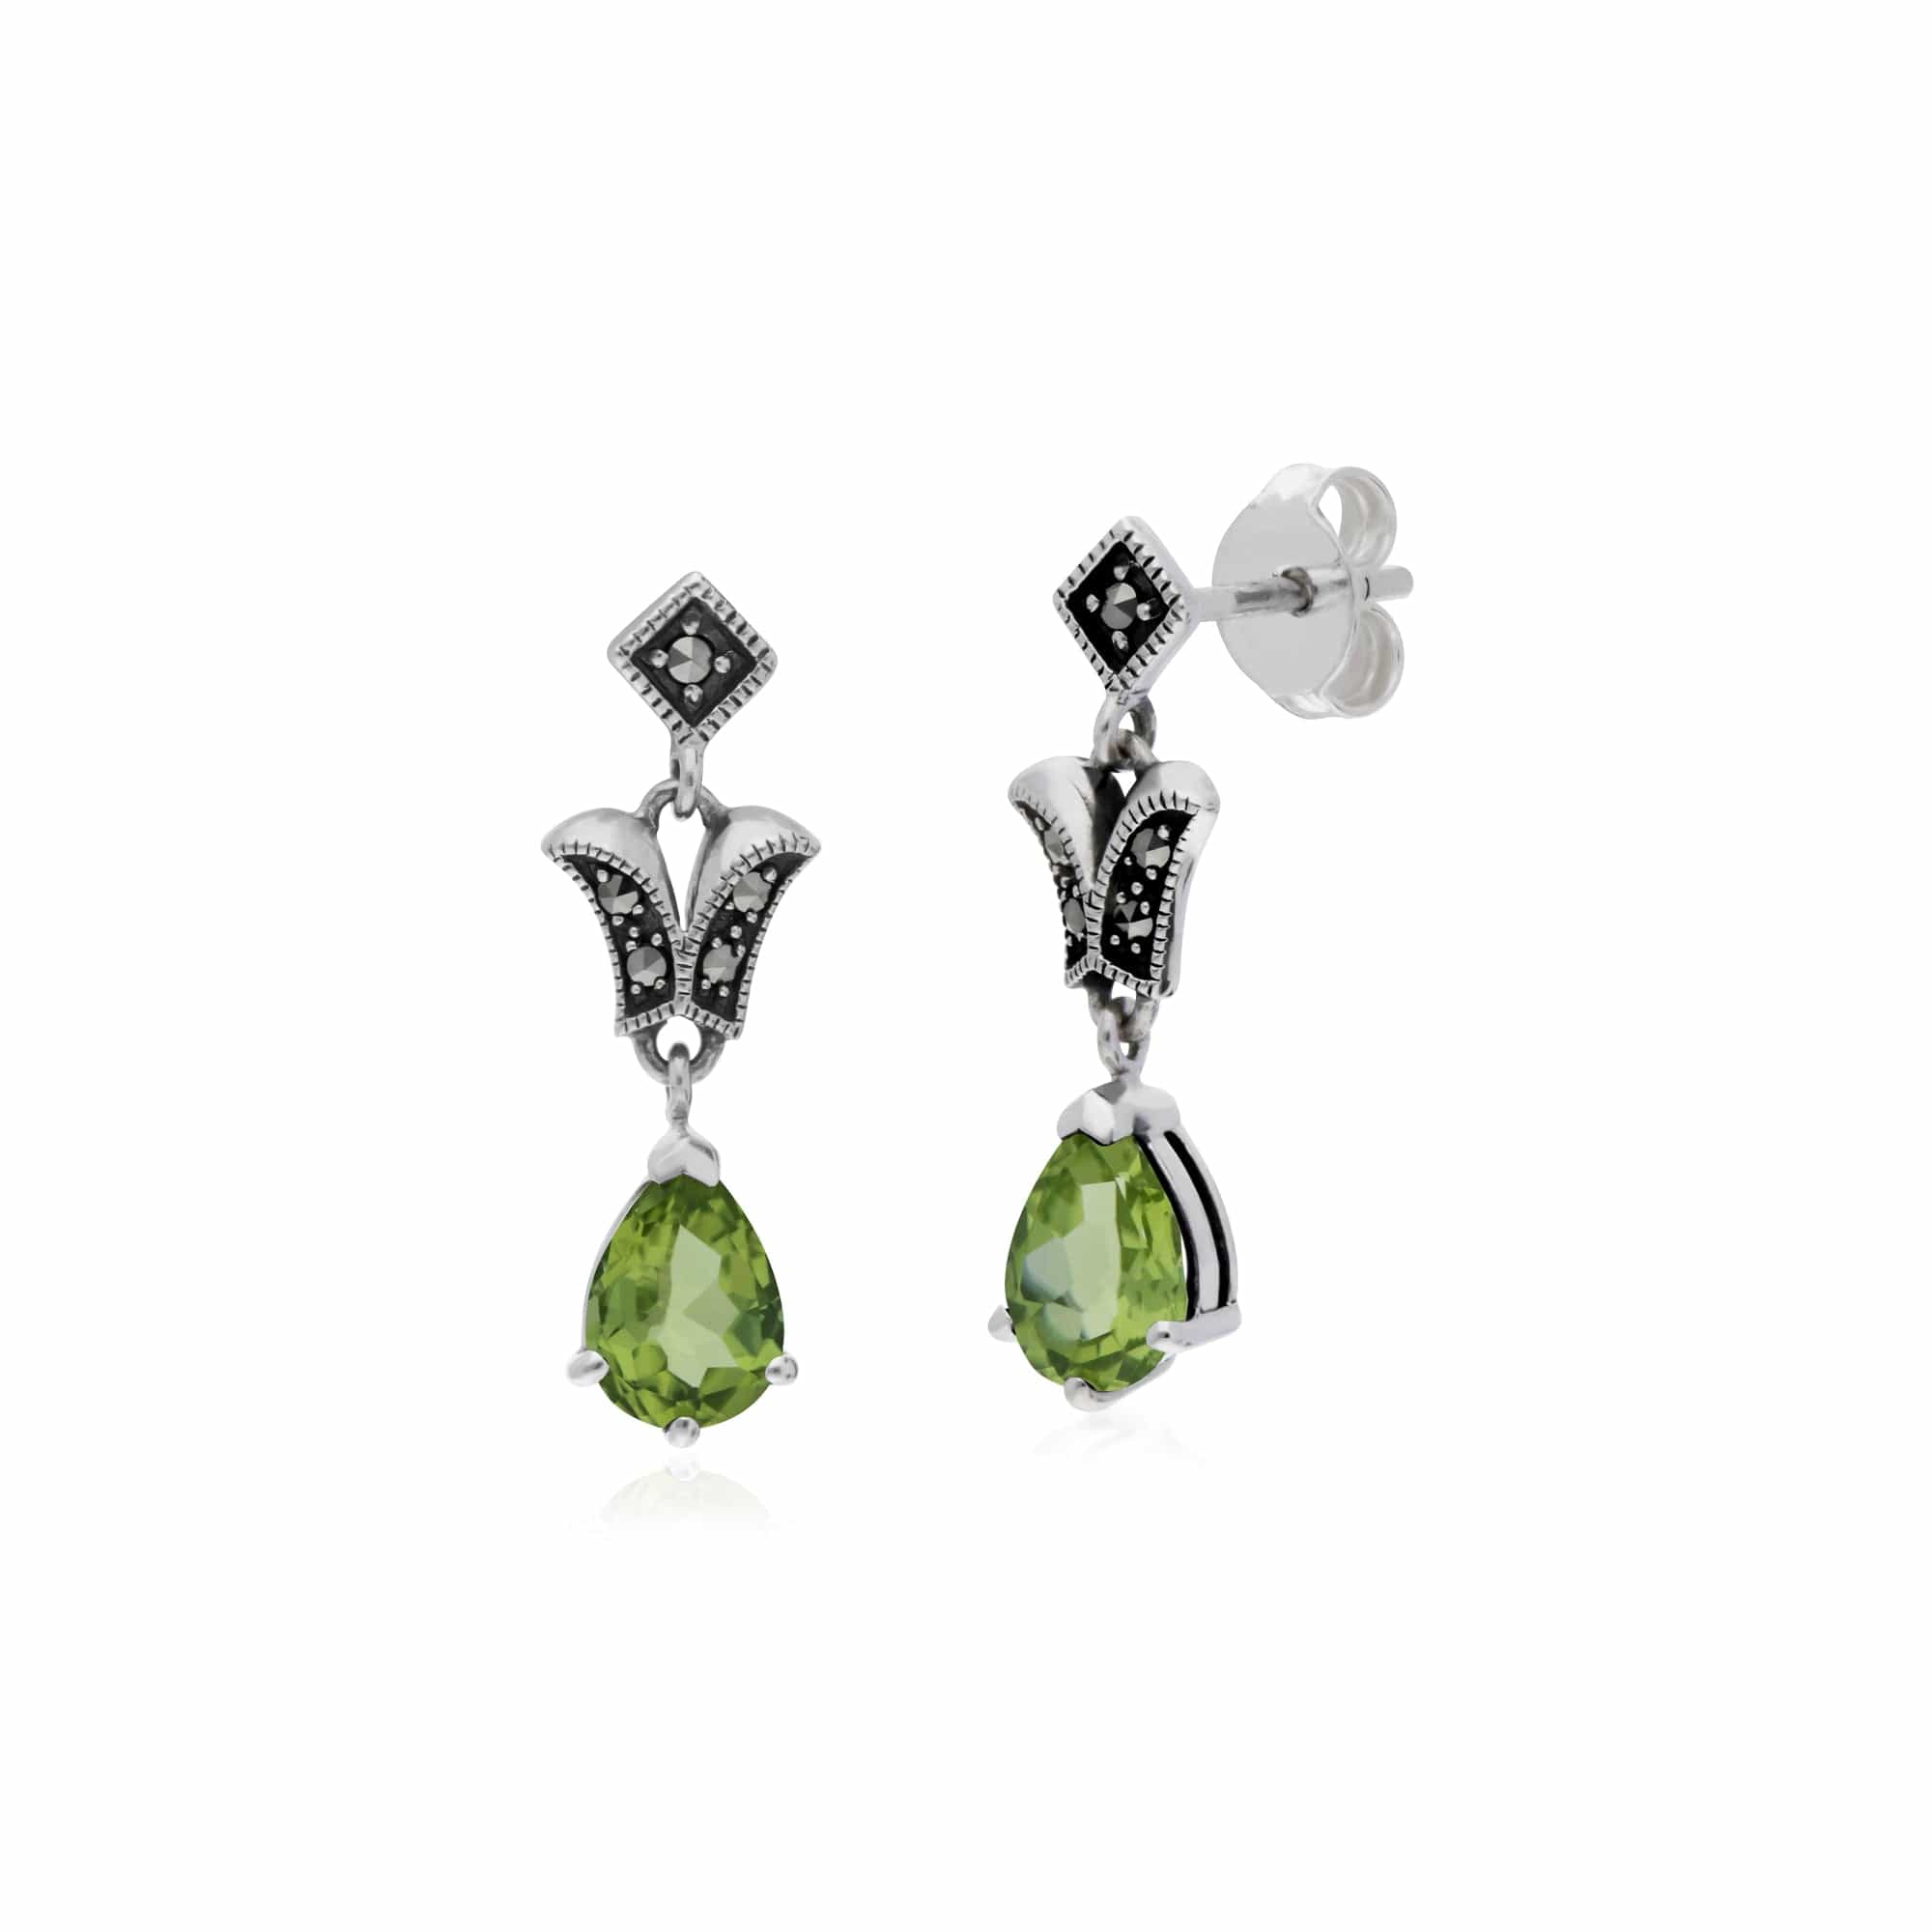 214E859603925 Art Nouveau Style Pear Peridot & Marcasite Drop Earrings in 925 Sterling Silver 1